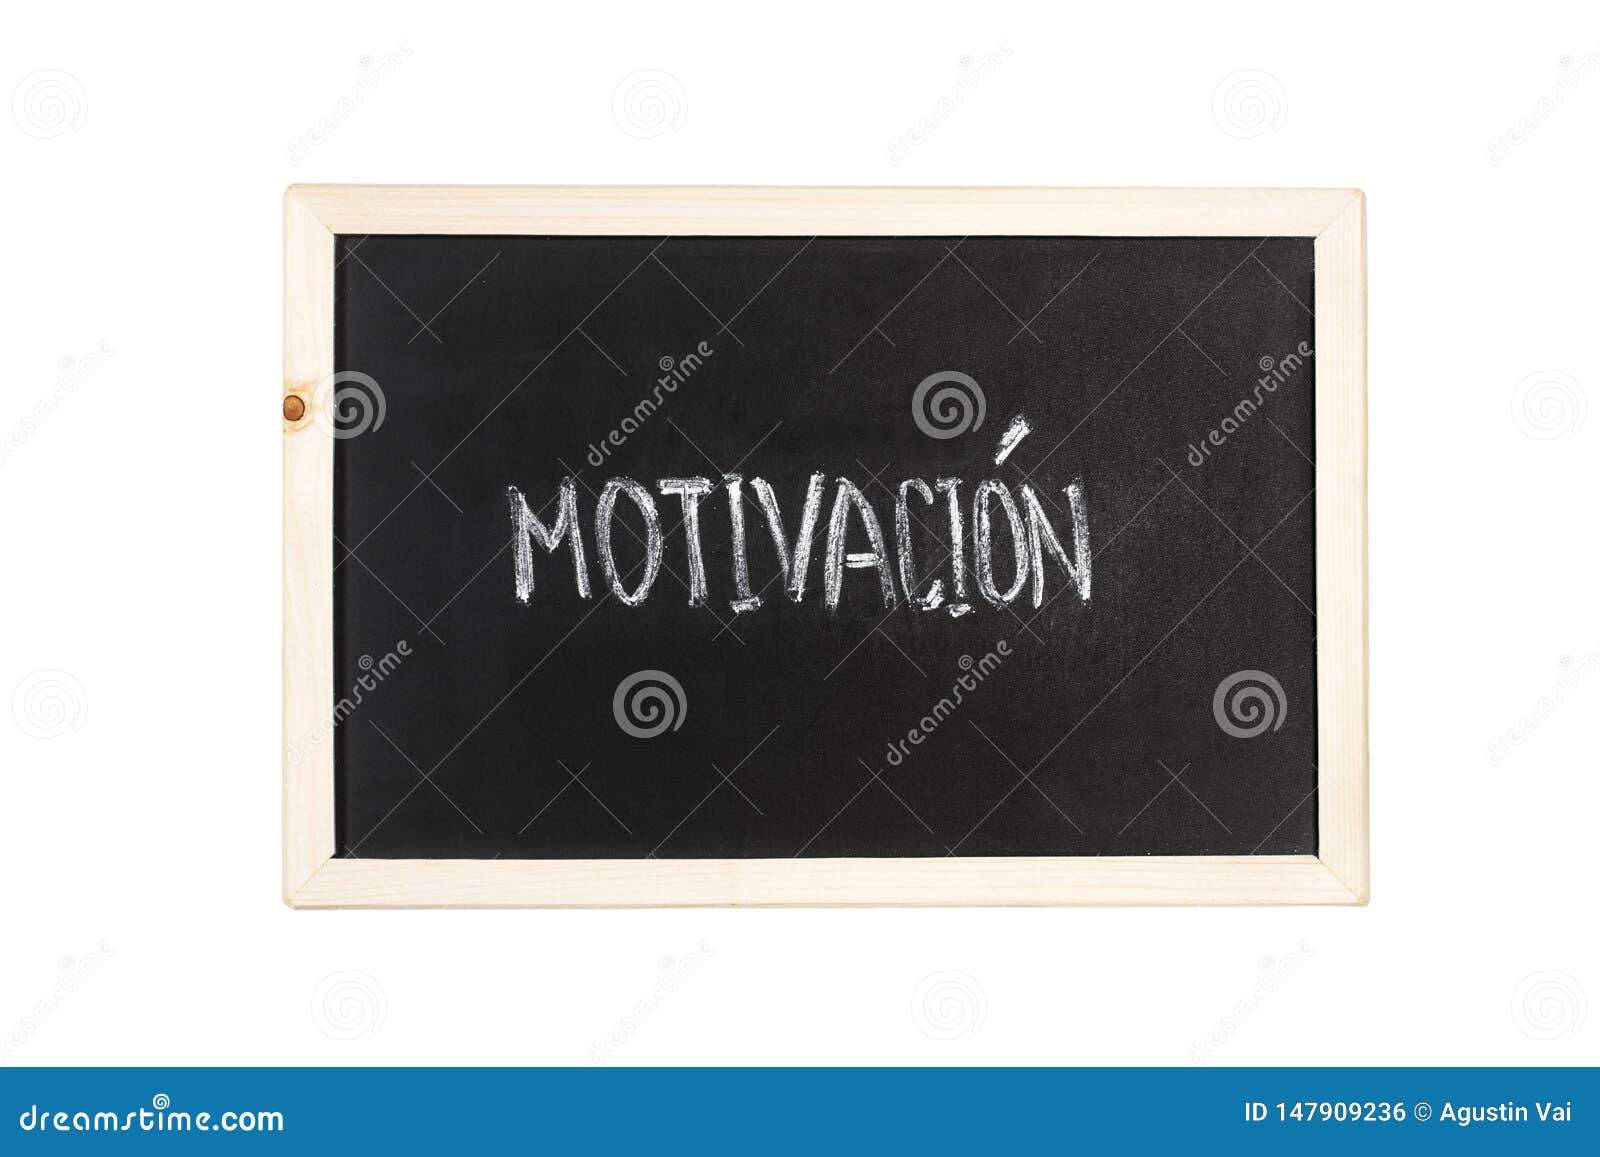 motivacion motivation word write in chalk on a blackboard